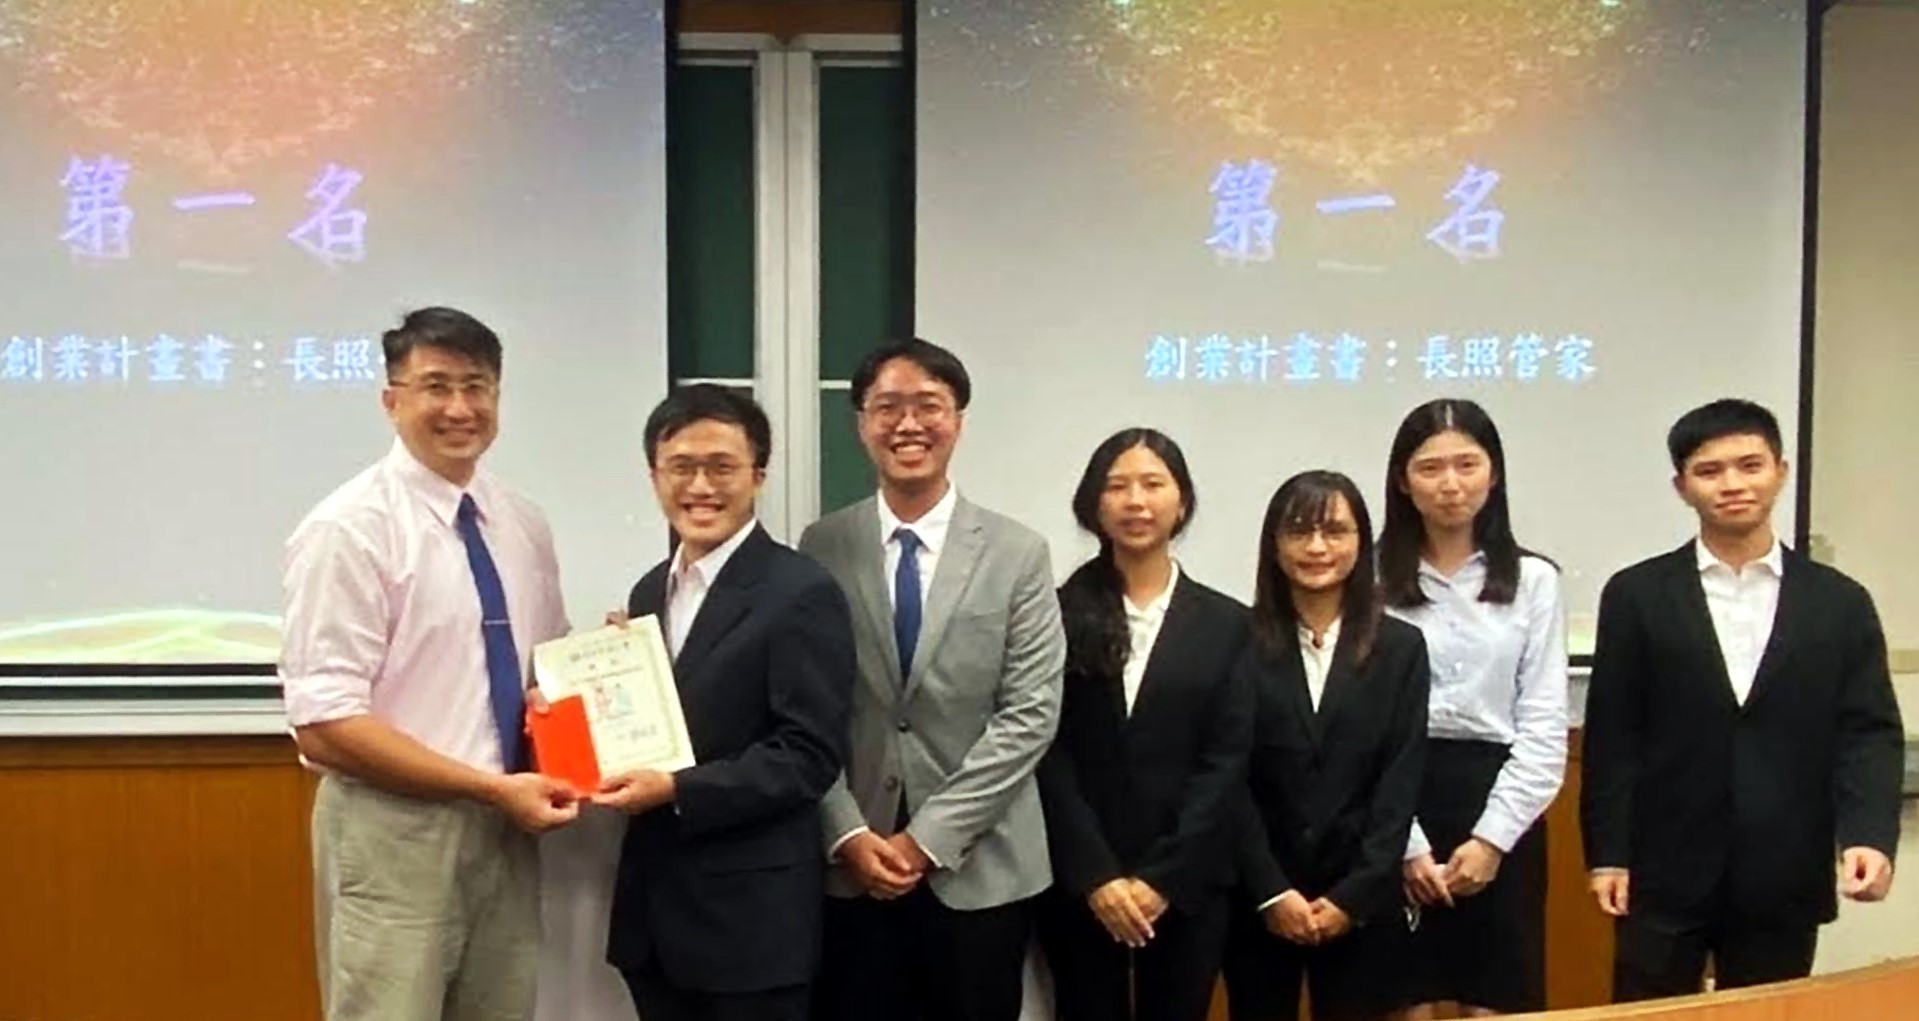 國企系主任欒錦榮老師頒獎，恭喜第一名的專題團隊成員